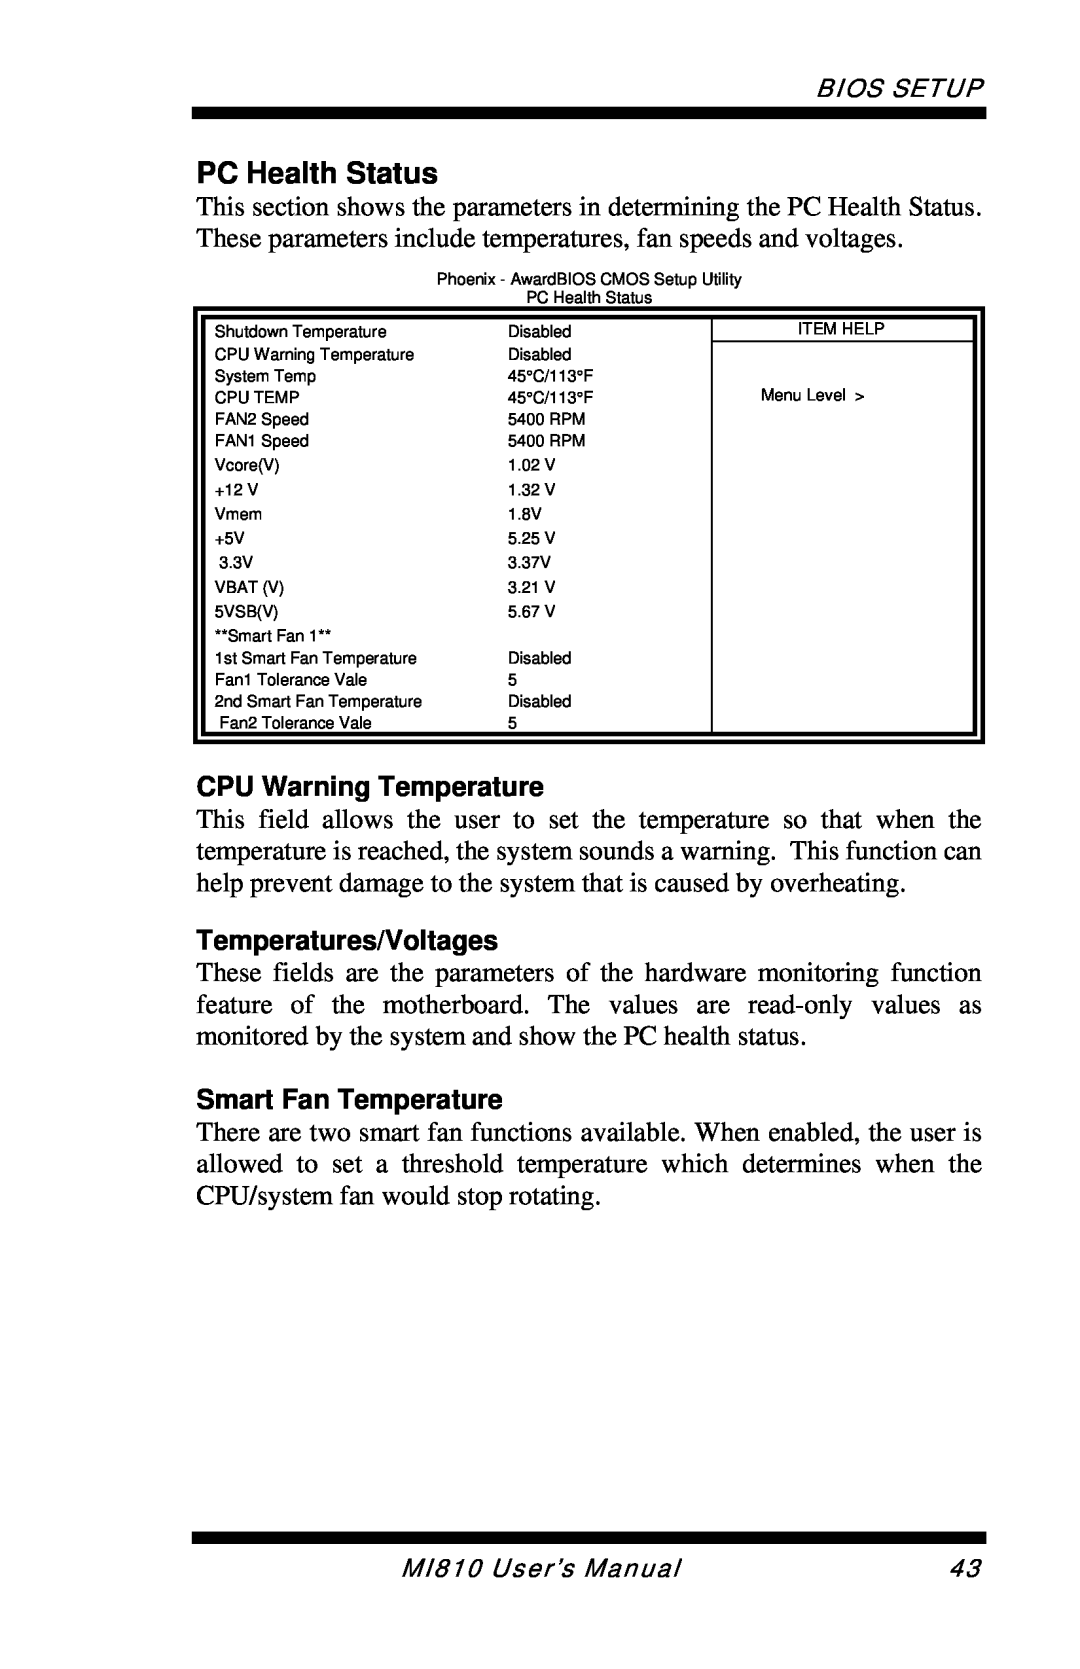 Intel MI810 user manual PC Health Status, CPU Warning Temperature, Temperatures/Voltages, Smart Fan Temperature 